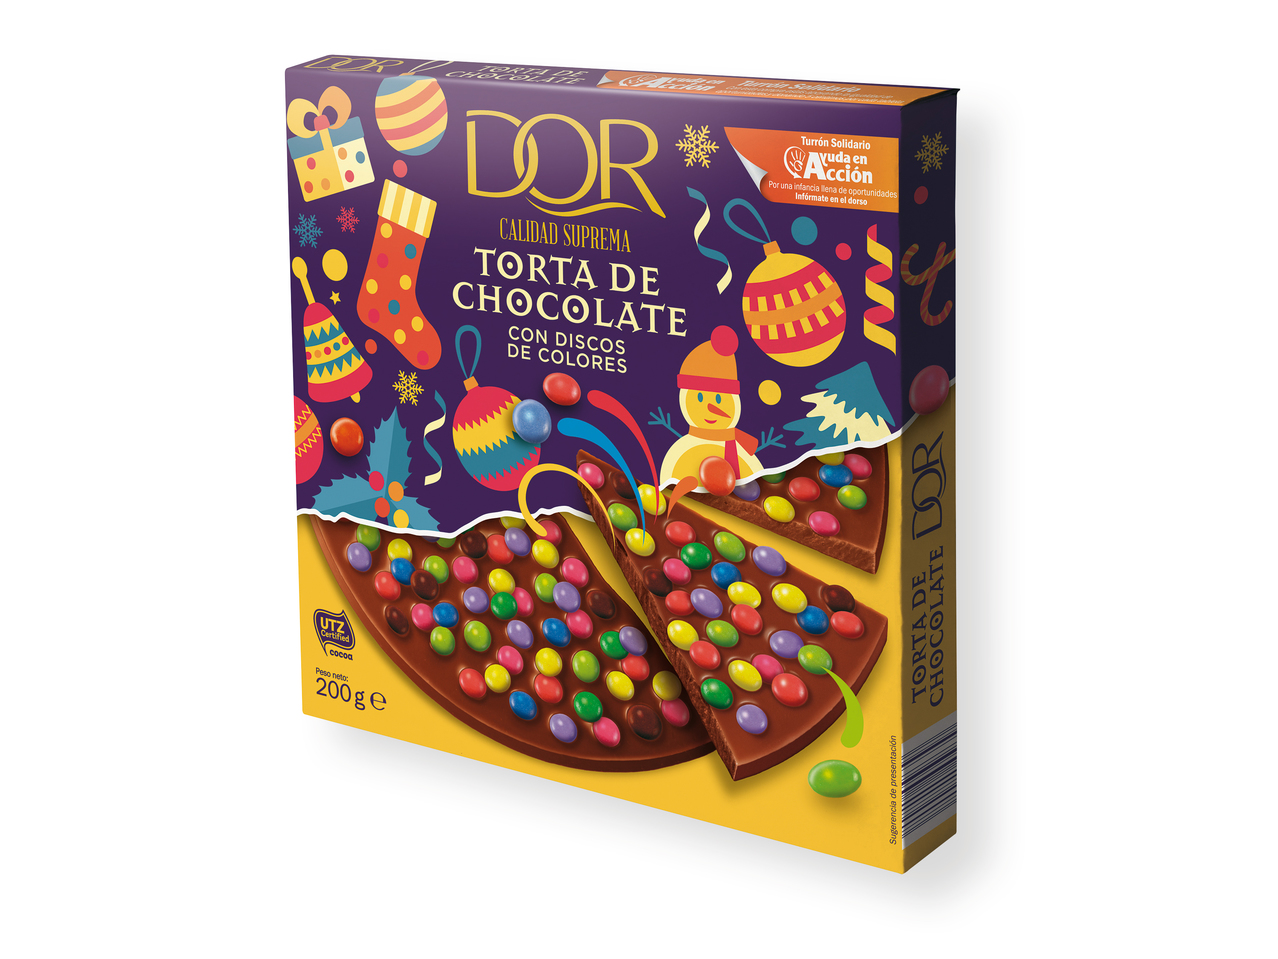 "Dor" Torta de chocolate con grajeas de colores